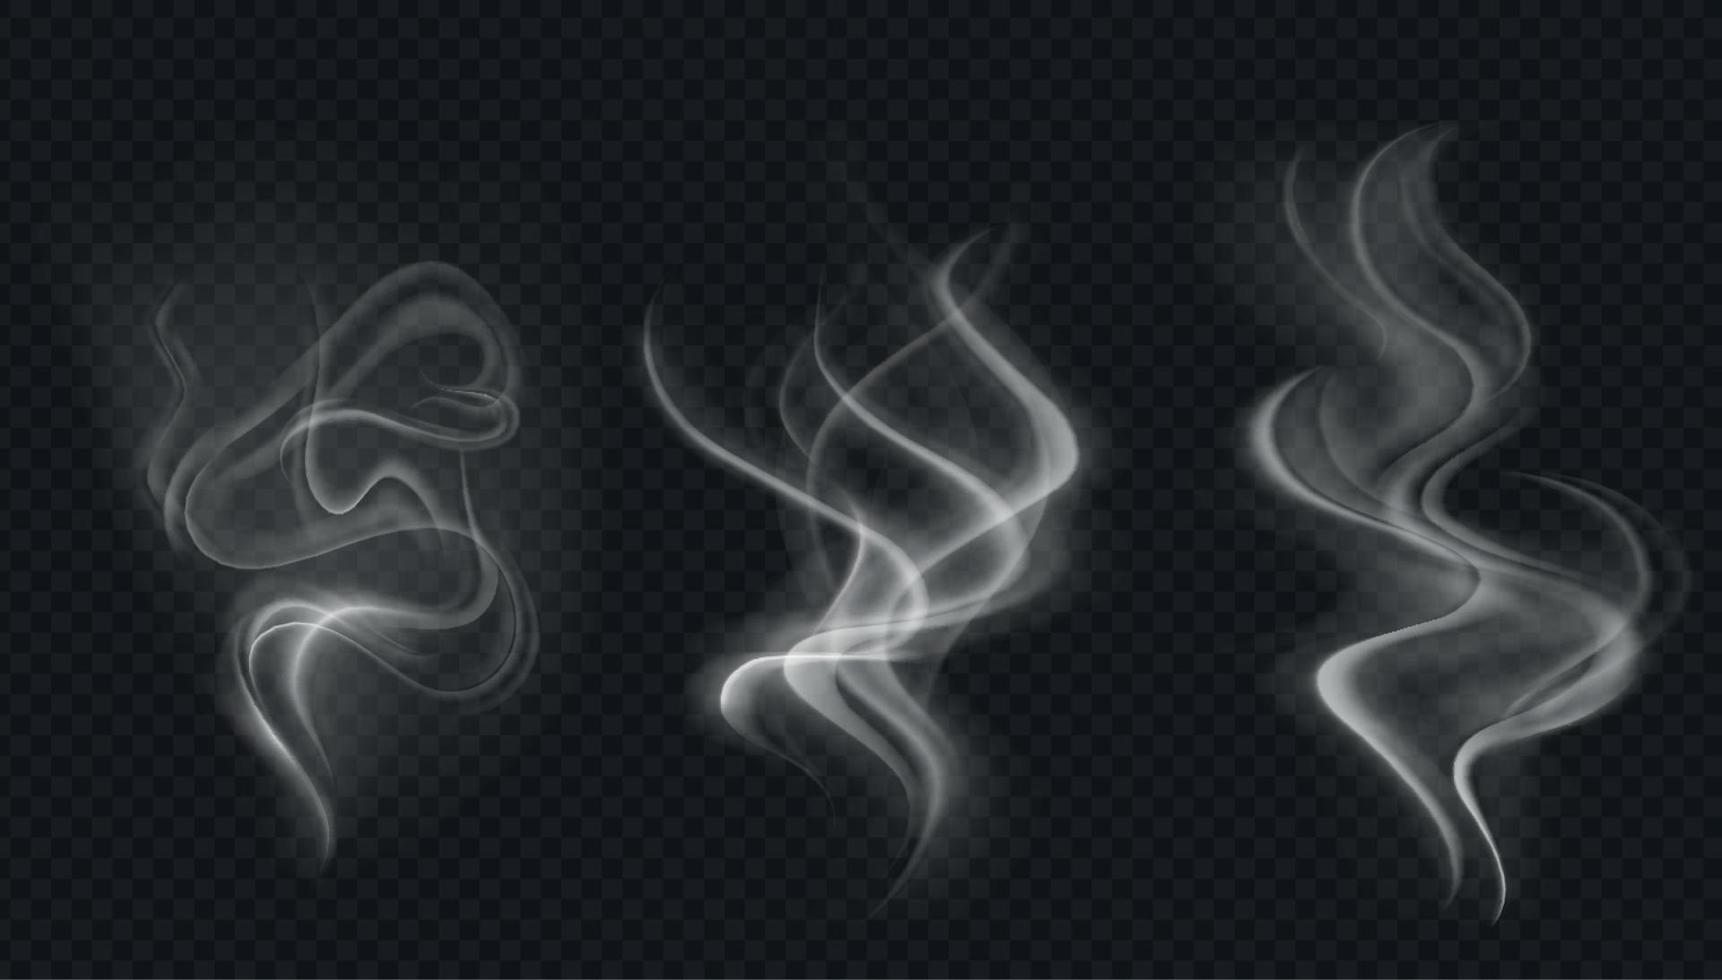 collection de vecteurs de fumée, fond isolé et transparent. ensemble de vapeur de fumée blanche réaliste, vagues de café, thé, cigarettes, aliments chauds,... effet de brouillard et de brume. vecteur